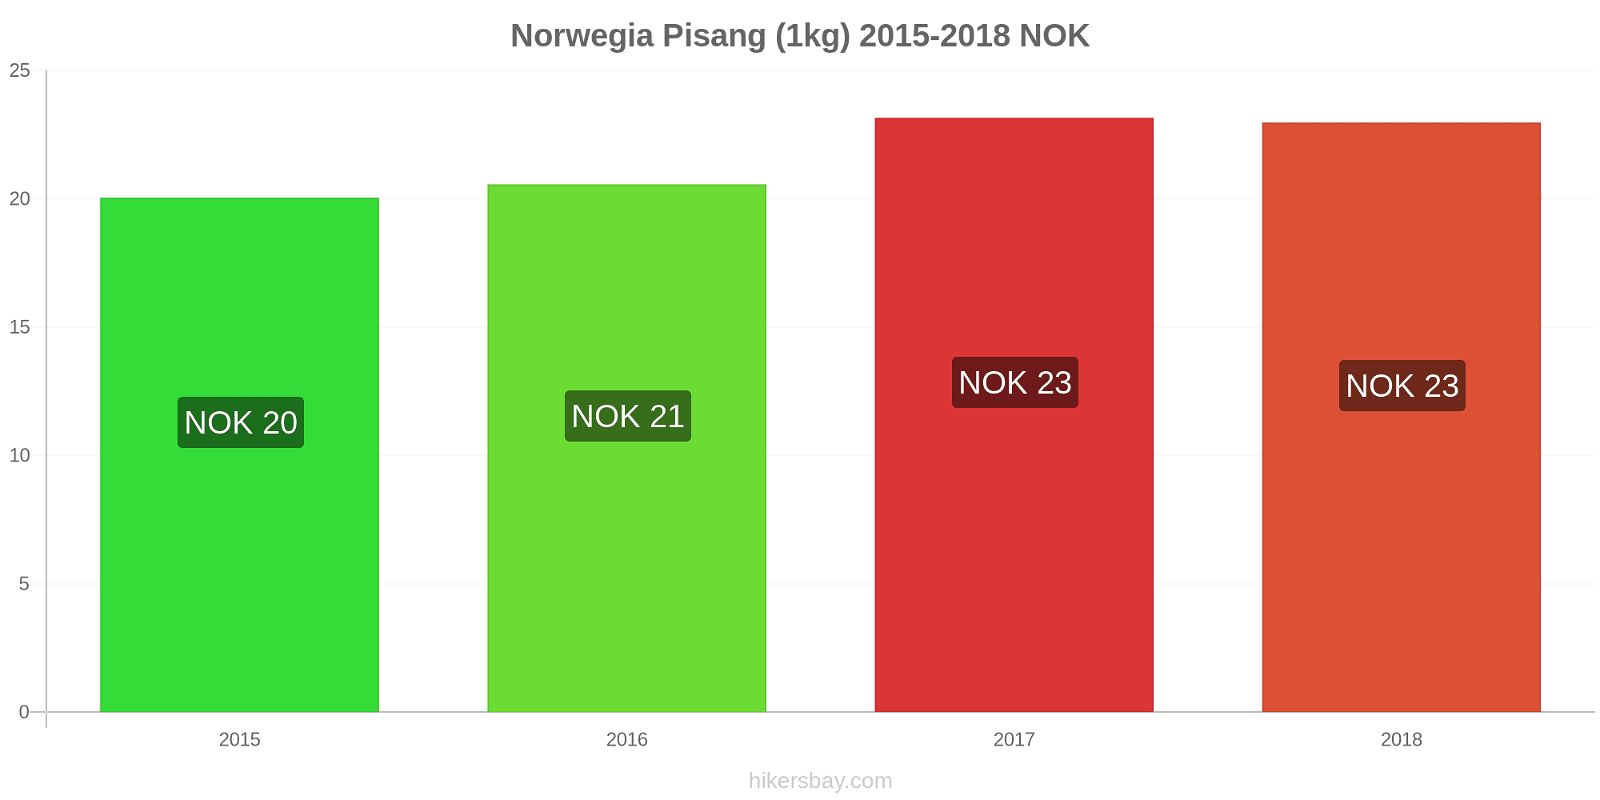 Norwegia perubahan harga Pisang (1kg) hikersbay.com